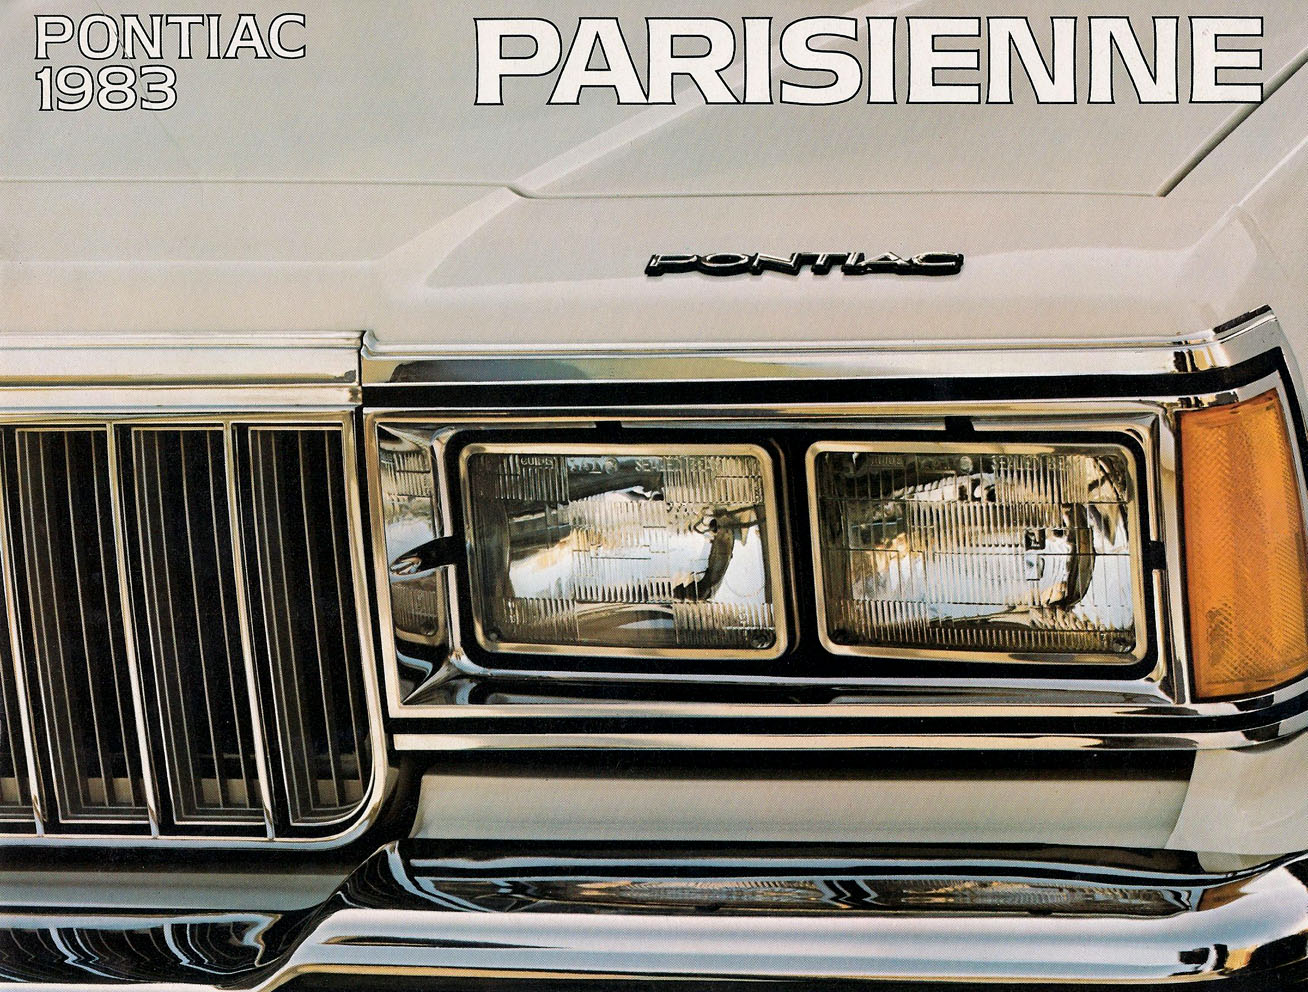 1983_Pontiac_Parisienne_Cdn-01